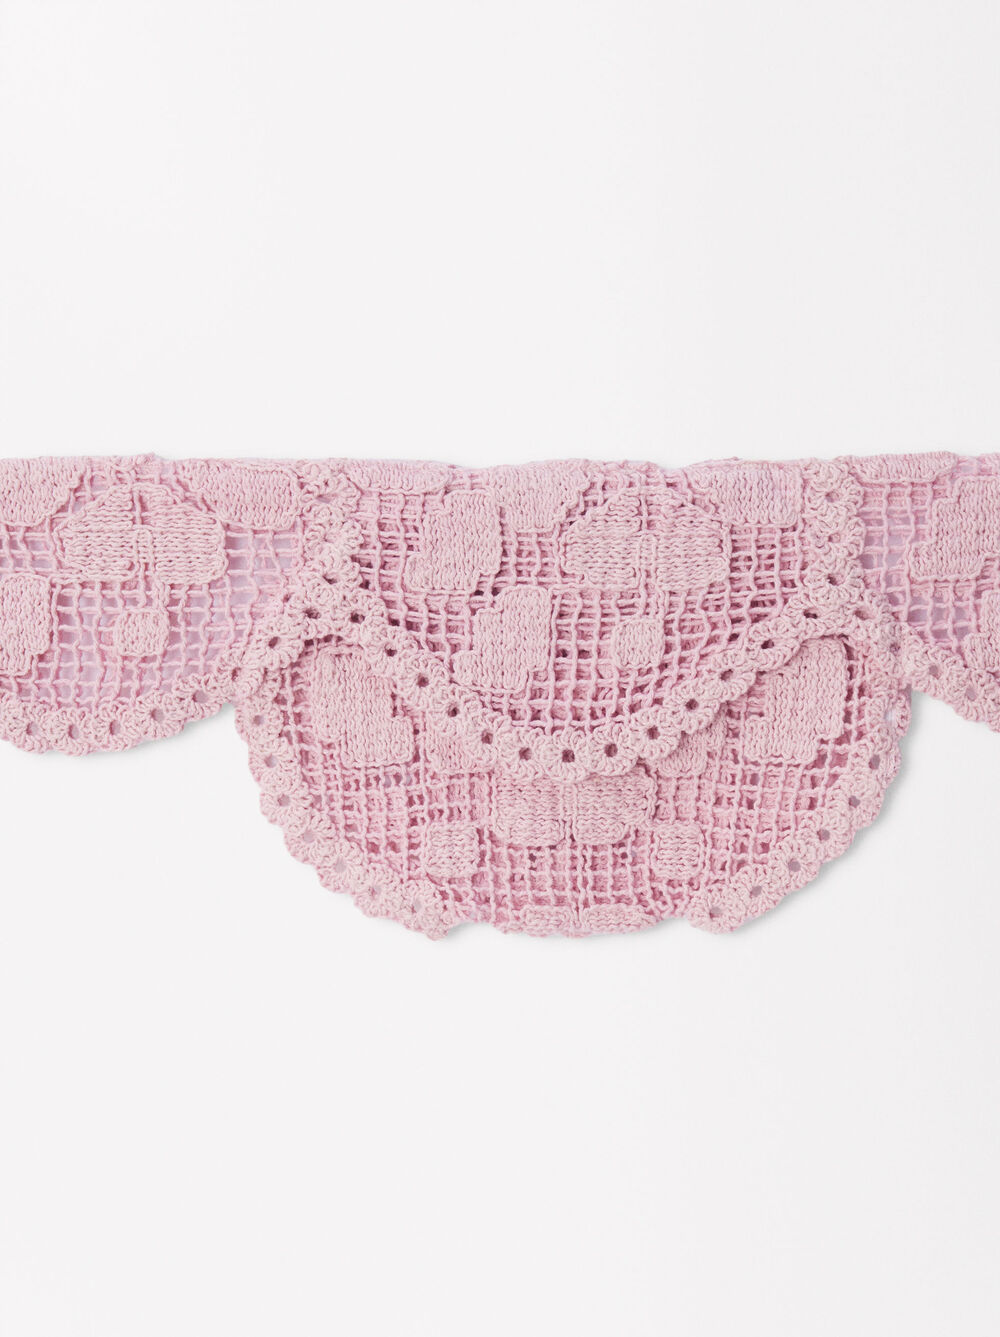 Exclusivo Online - Mala De Cintura Crochet